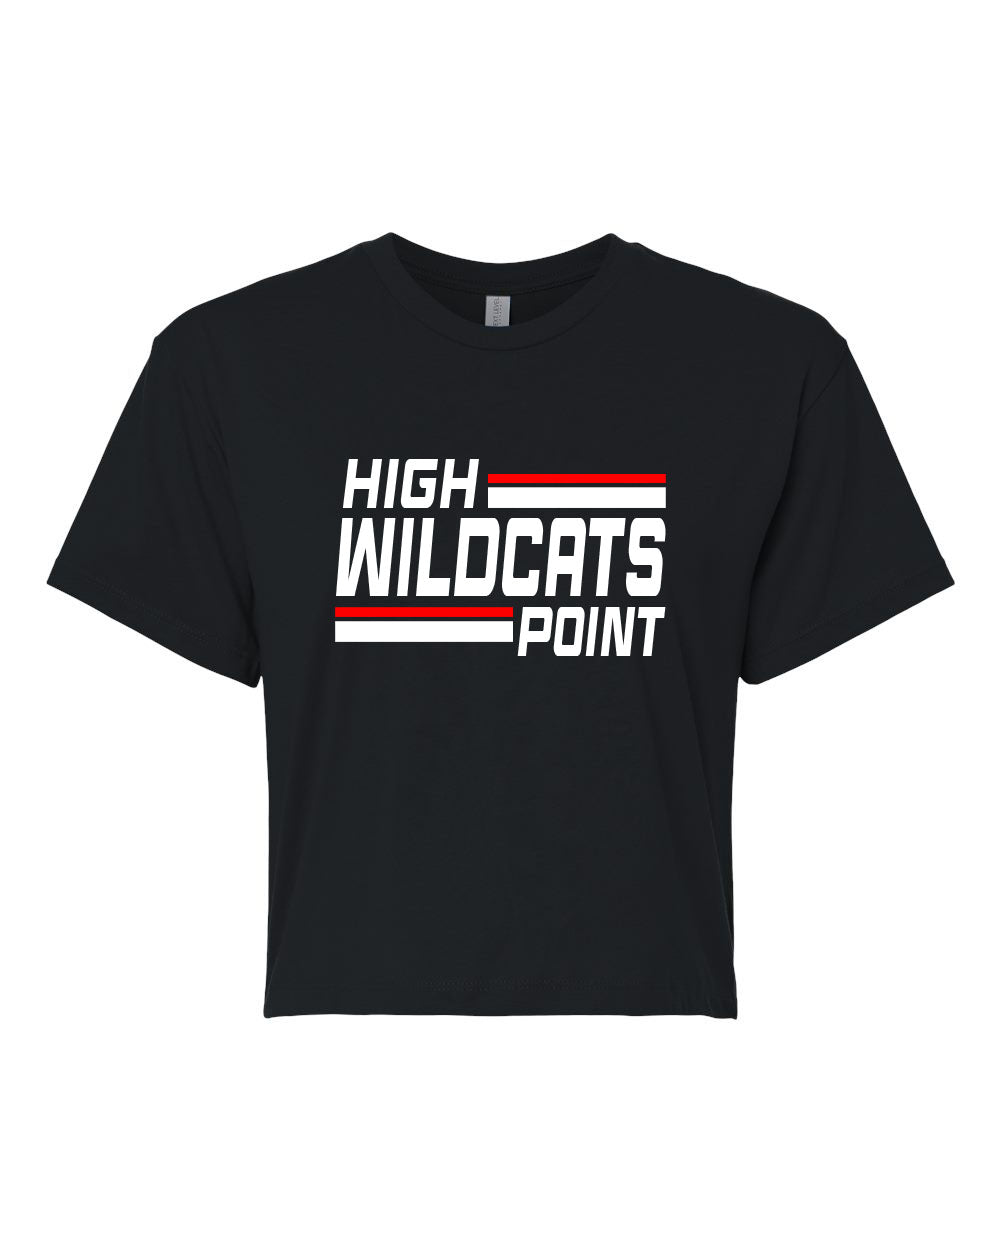 Wildcats Cheer design 4 Crop Top